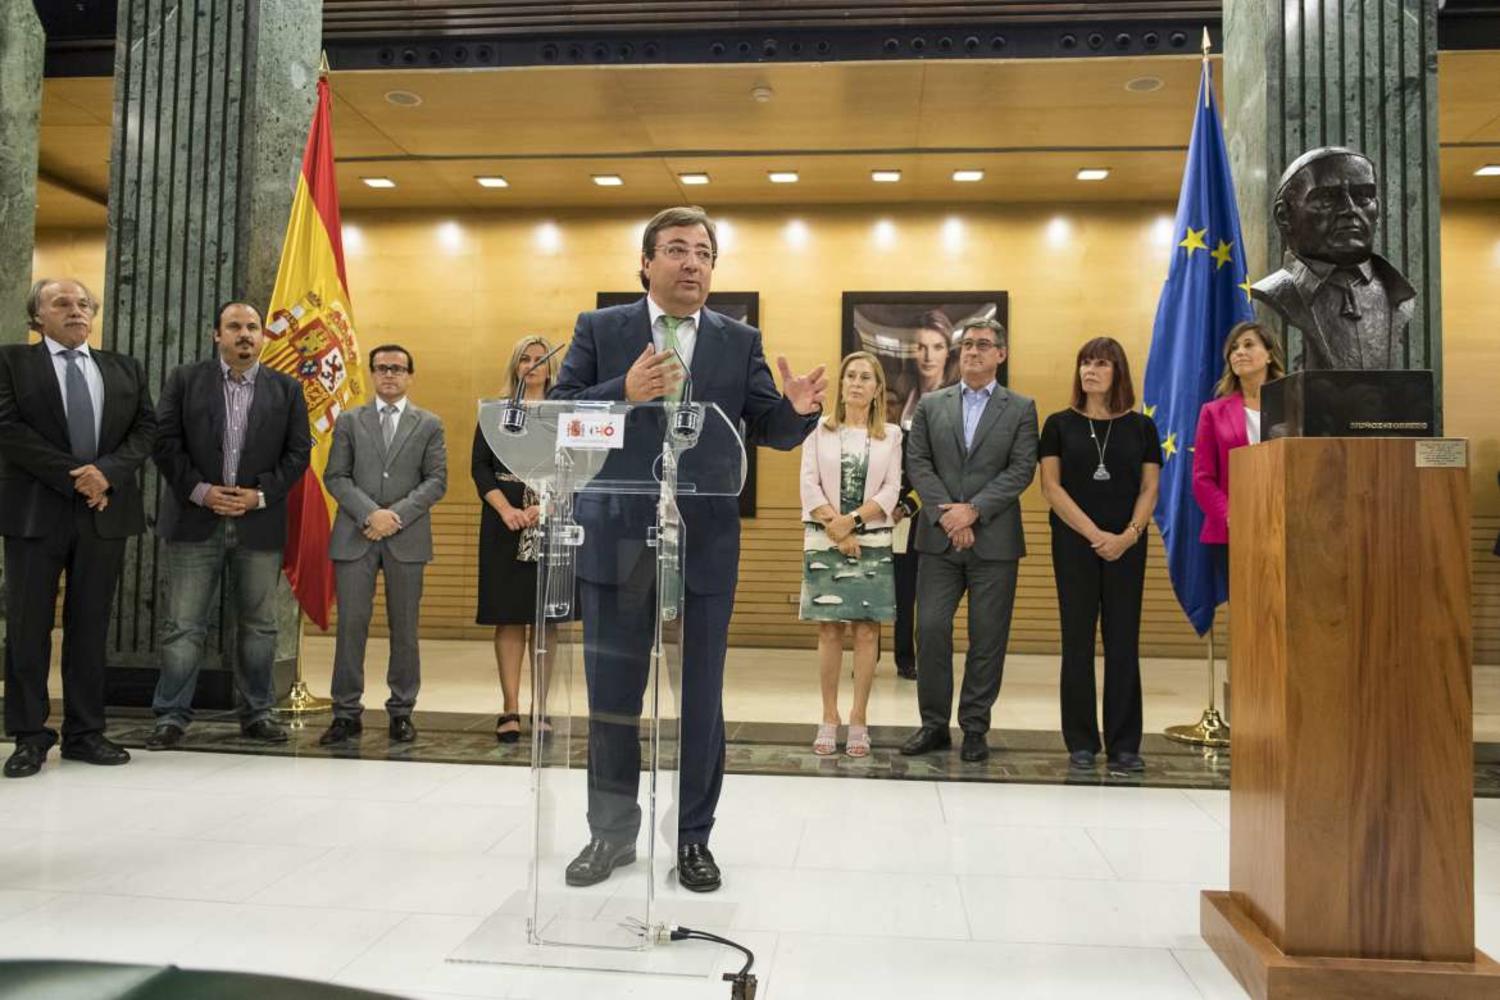 La presidenta del Congreso, Ana Pastor, inaugura el busto de Diego Muñoz-Torrero junto a Guillermo Fernández Vara, Presidente de la Junta de Extremadura y otras autoridades. Congreso de los Diputados